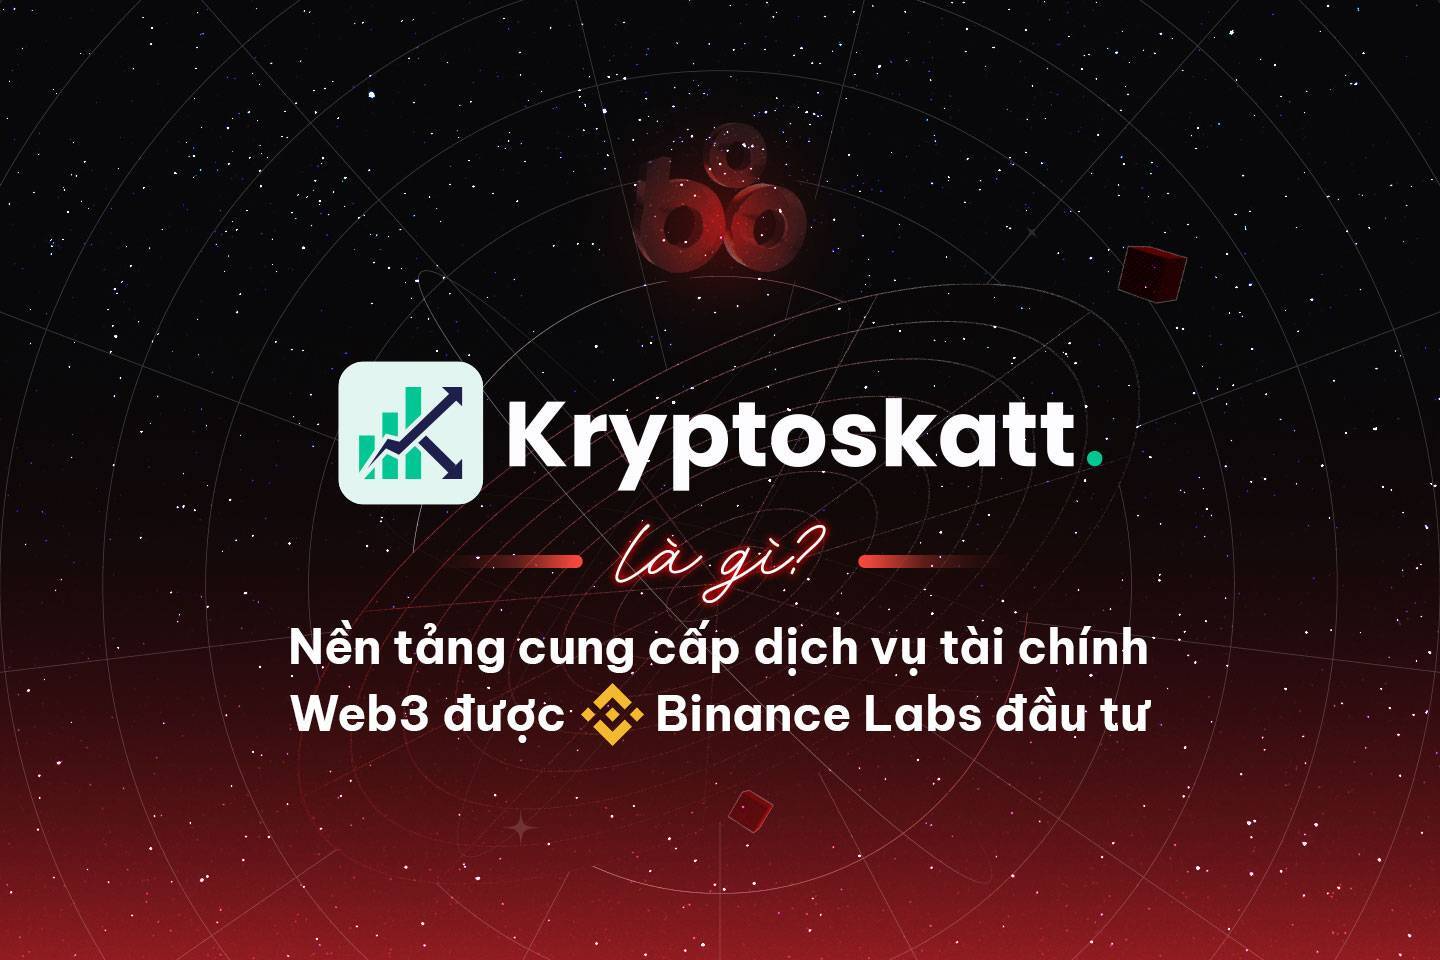 Kryptoskatt Là Gì Nền Tảng Cung Cấp Dịch Vụ Tài Chính Web3 Được Binance Labs Đầu Tư